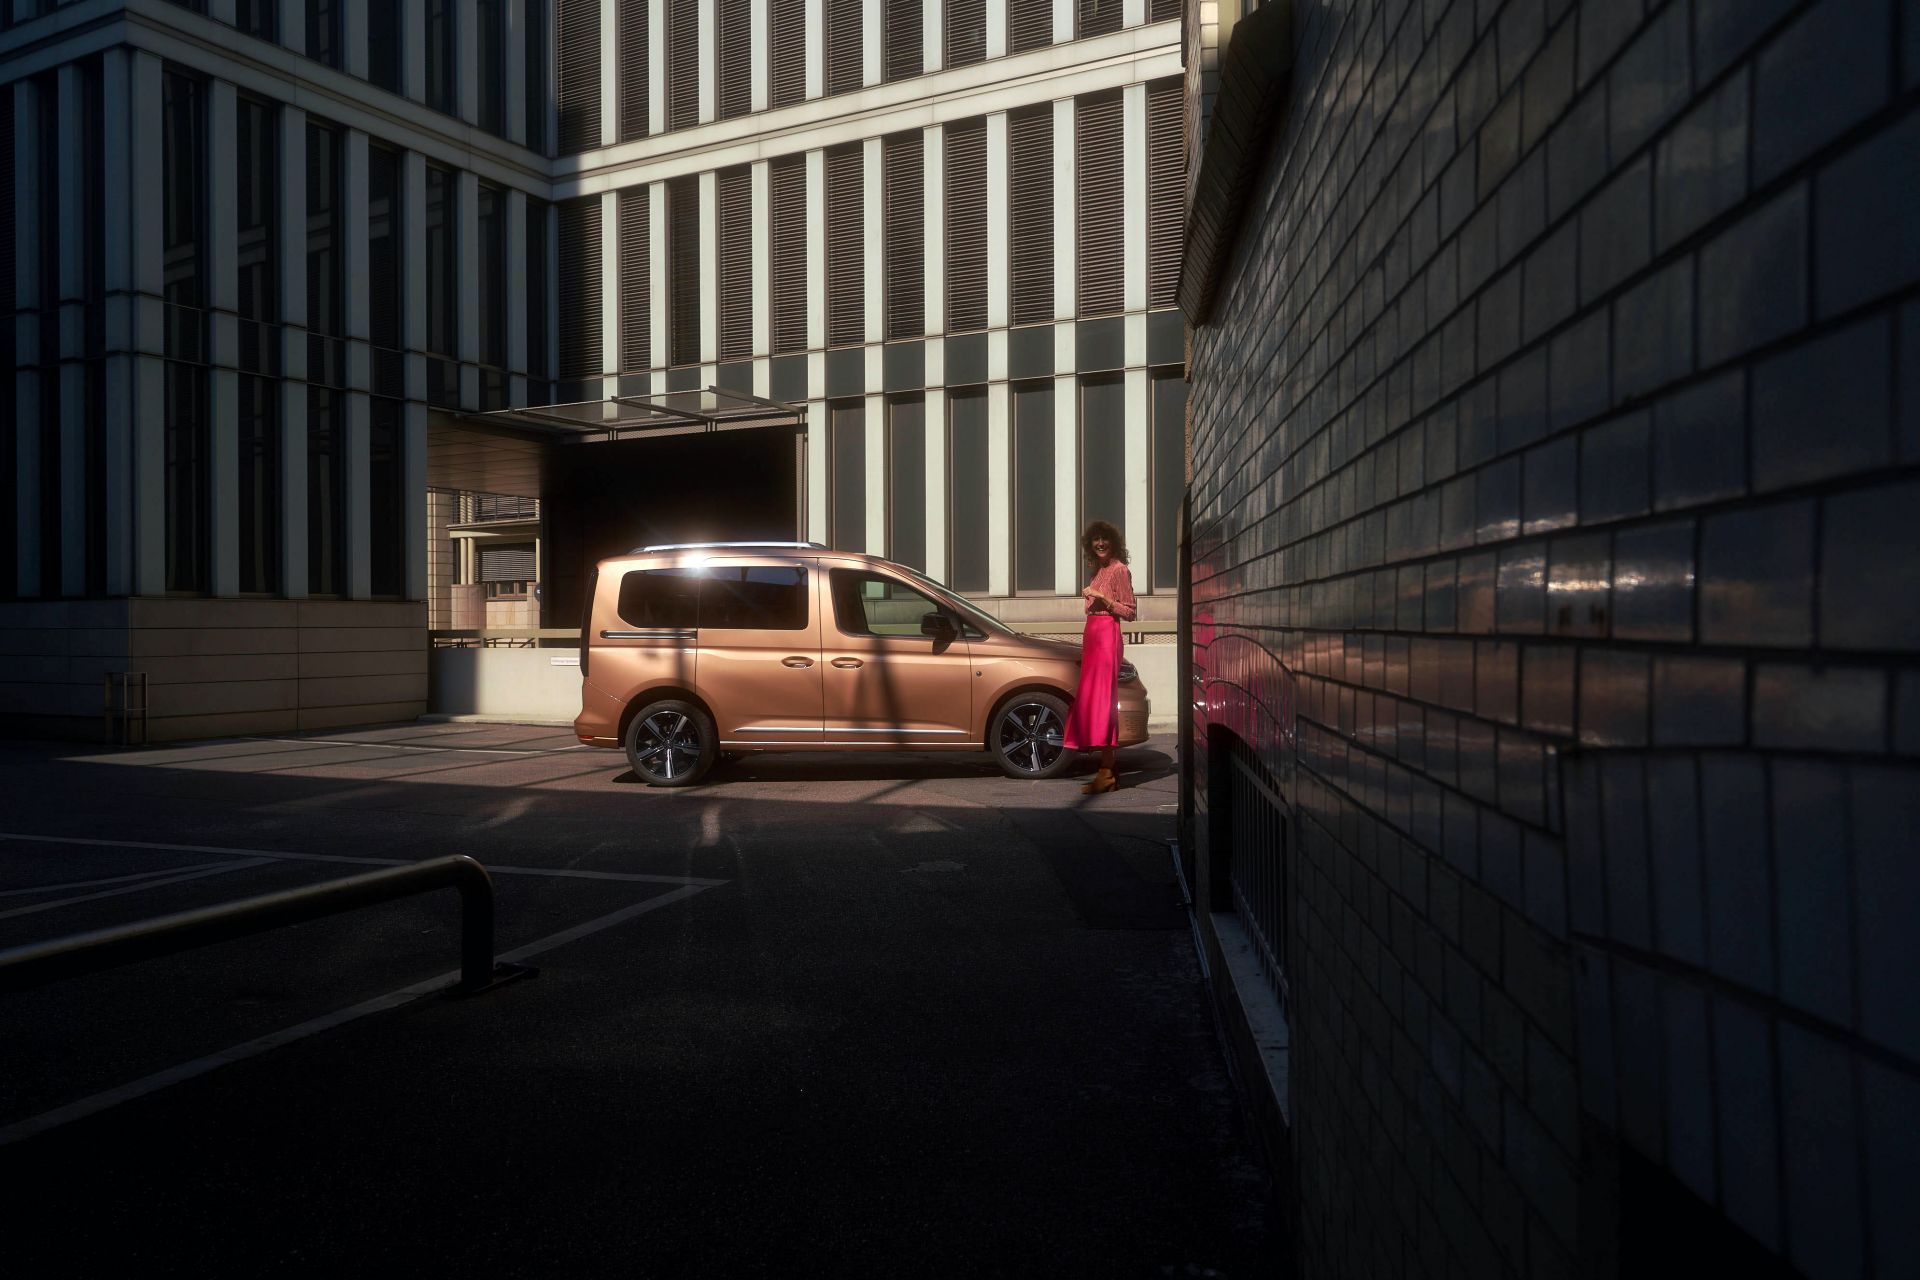 2021 VW Caddy resim galerisi (26.10.2020)